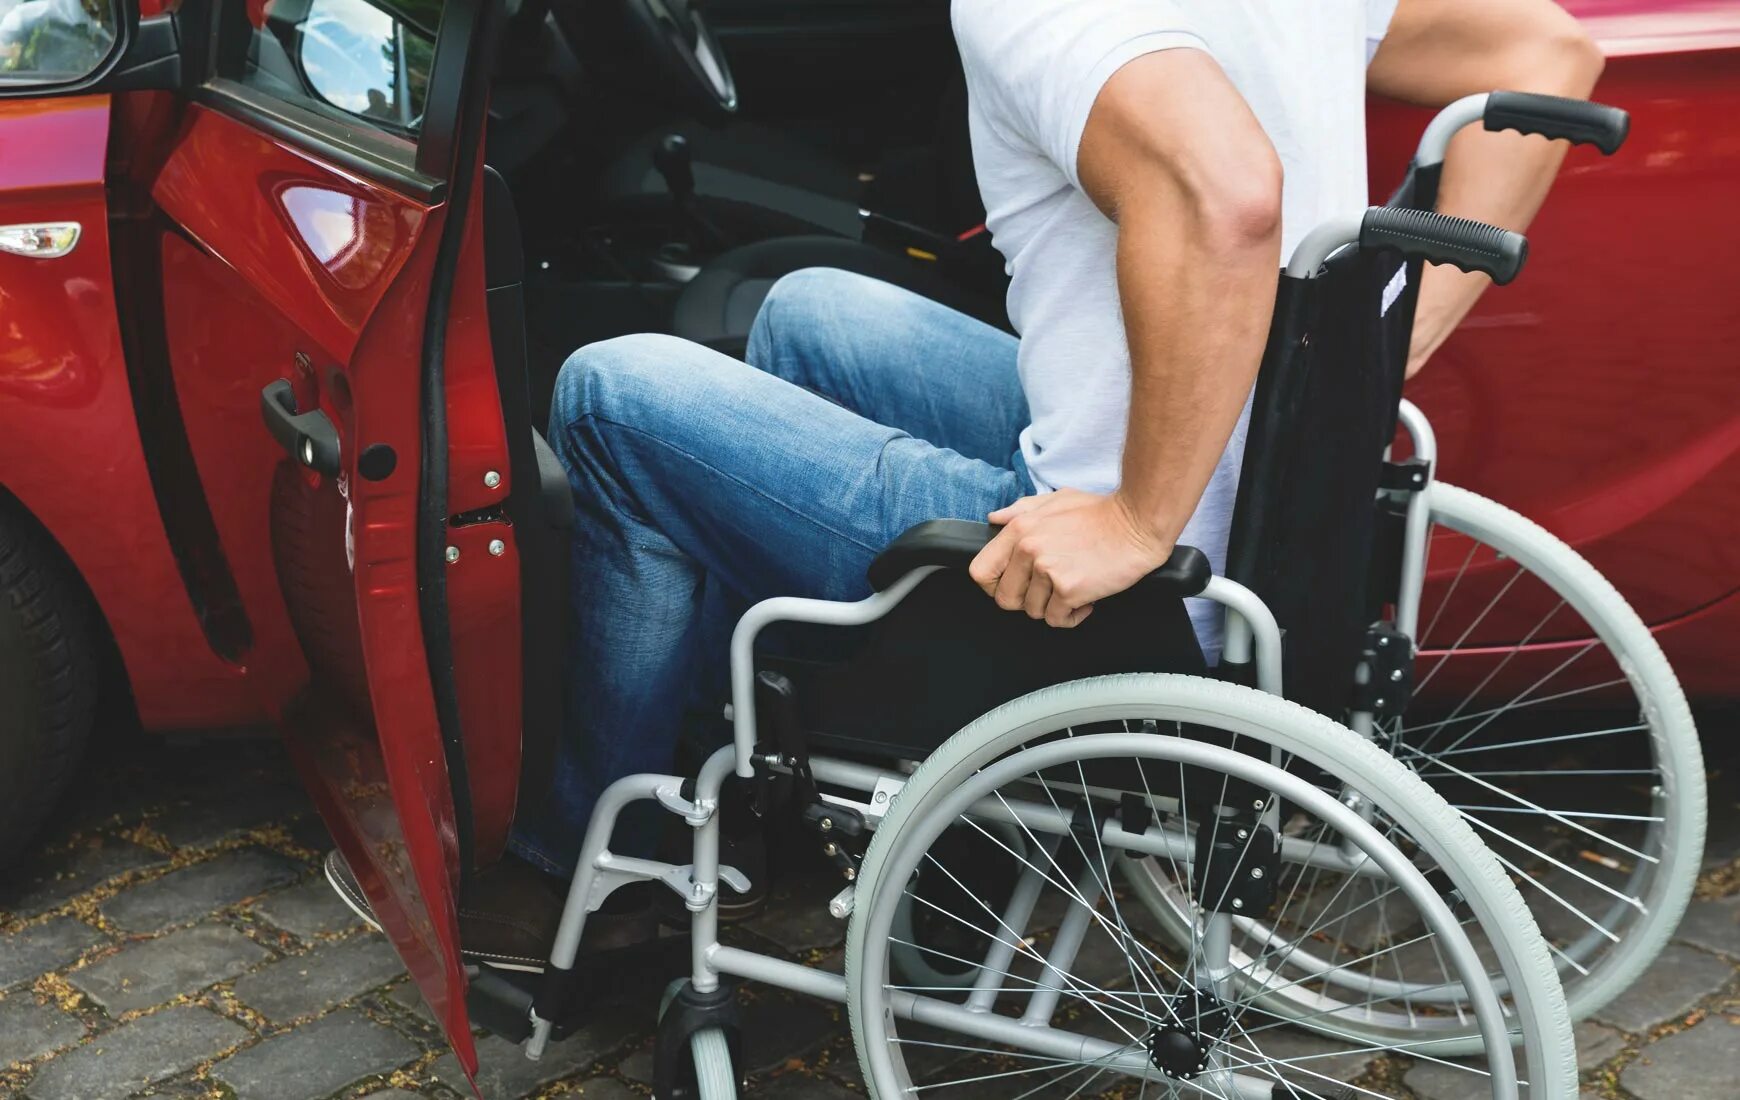 Автомобиль инвалидам 1 группы. Машина для инвалидов. Автомобиль для инвалидов колясочников. Автомобиль для людей с ограниченными возможностями. Парковка для инвалидов колясочников.